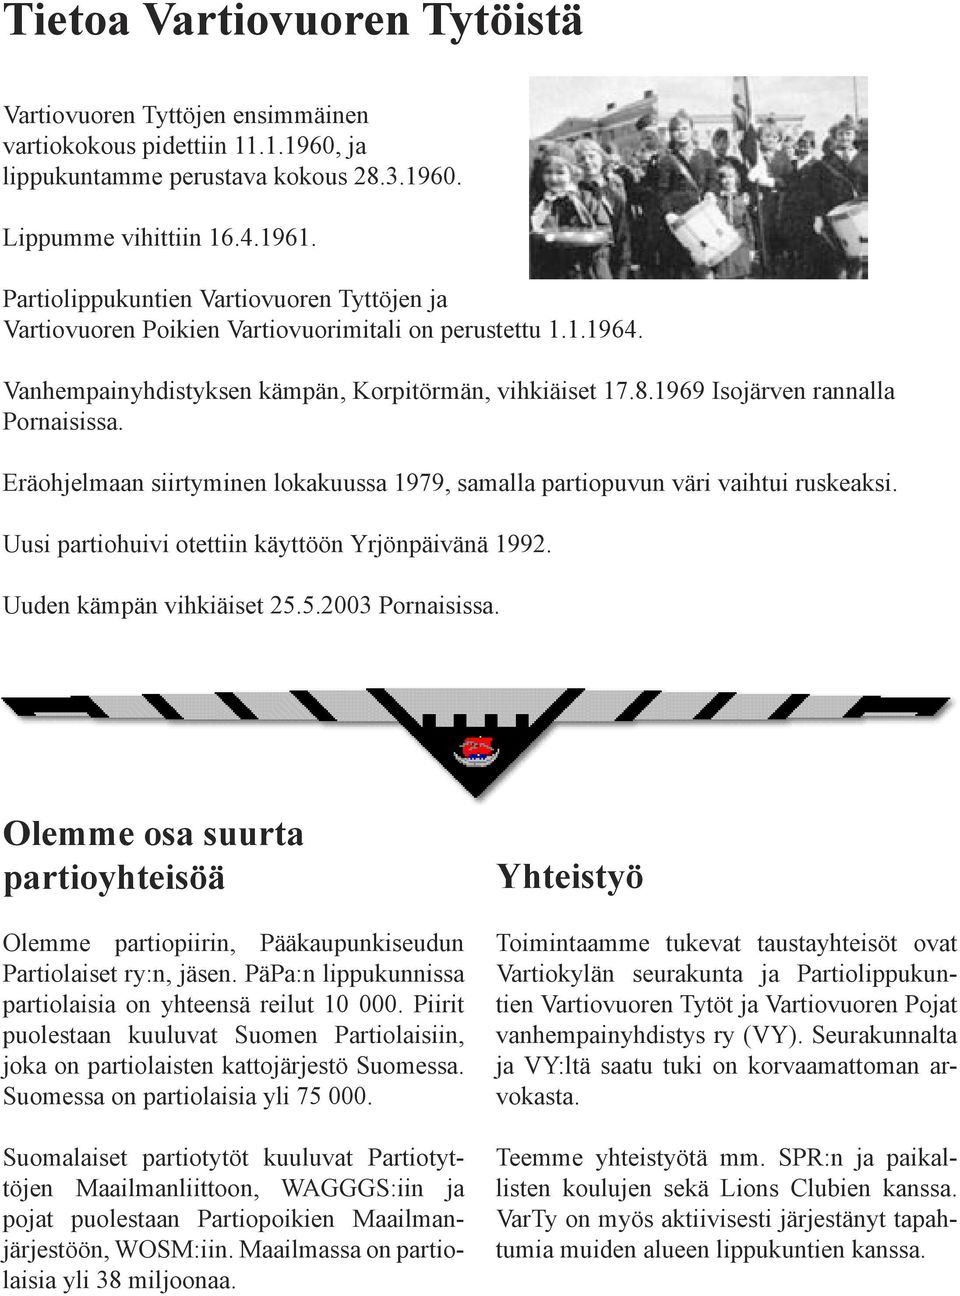 1969 Isojärven rannalla Pornaisissa. Eräohjelmaan siirtyminen lokakuussa 1979, samalla partiopuvun väri vaihtui ruskeaksi. Uusi partiohuivi otettiin käyttöön Yrjönpäivänä 1992.